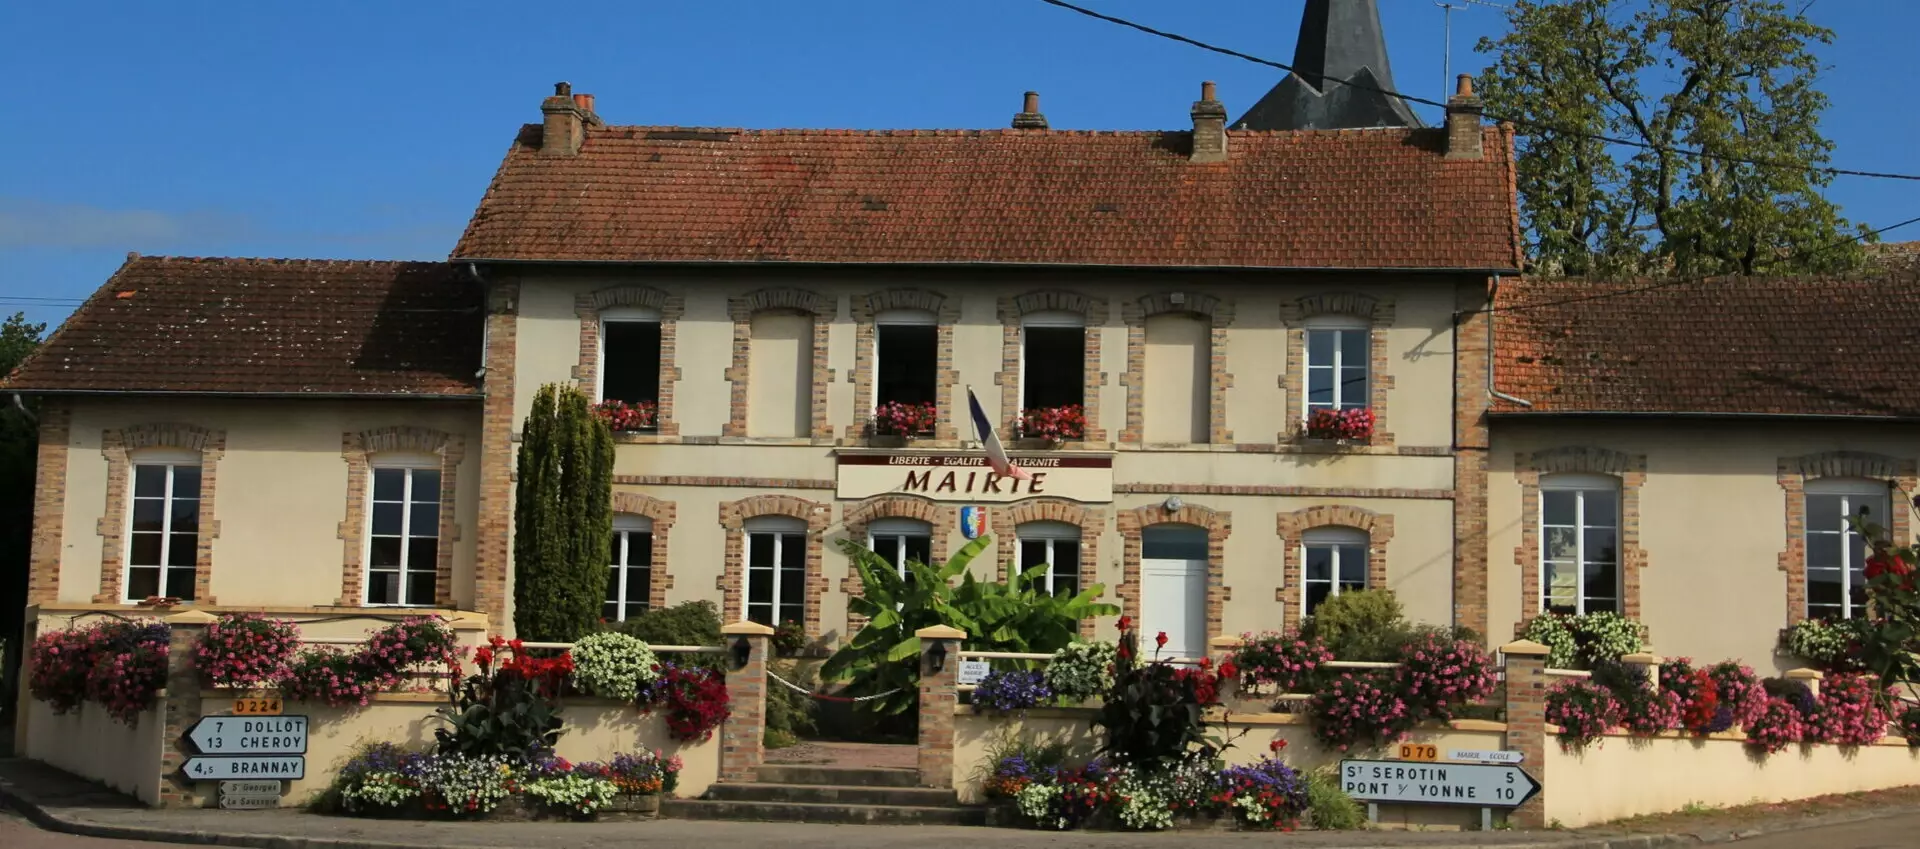 Le Centre Social de la commune de Villebougis (89) Yonne